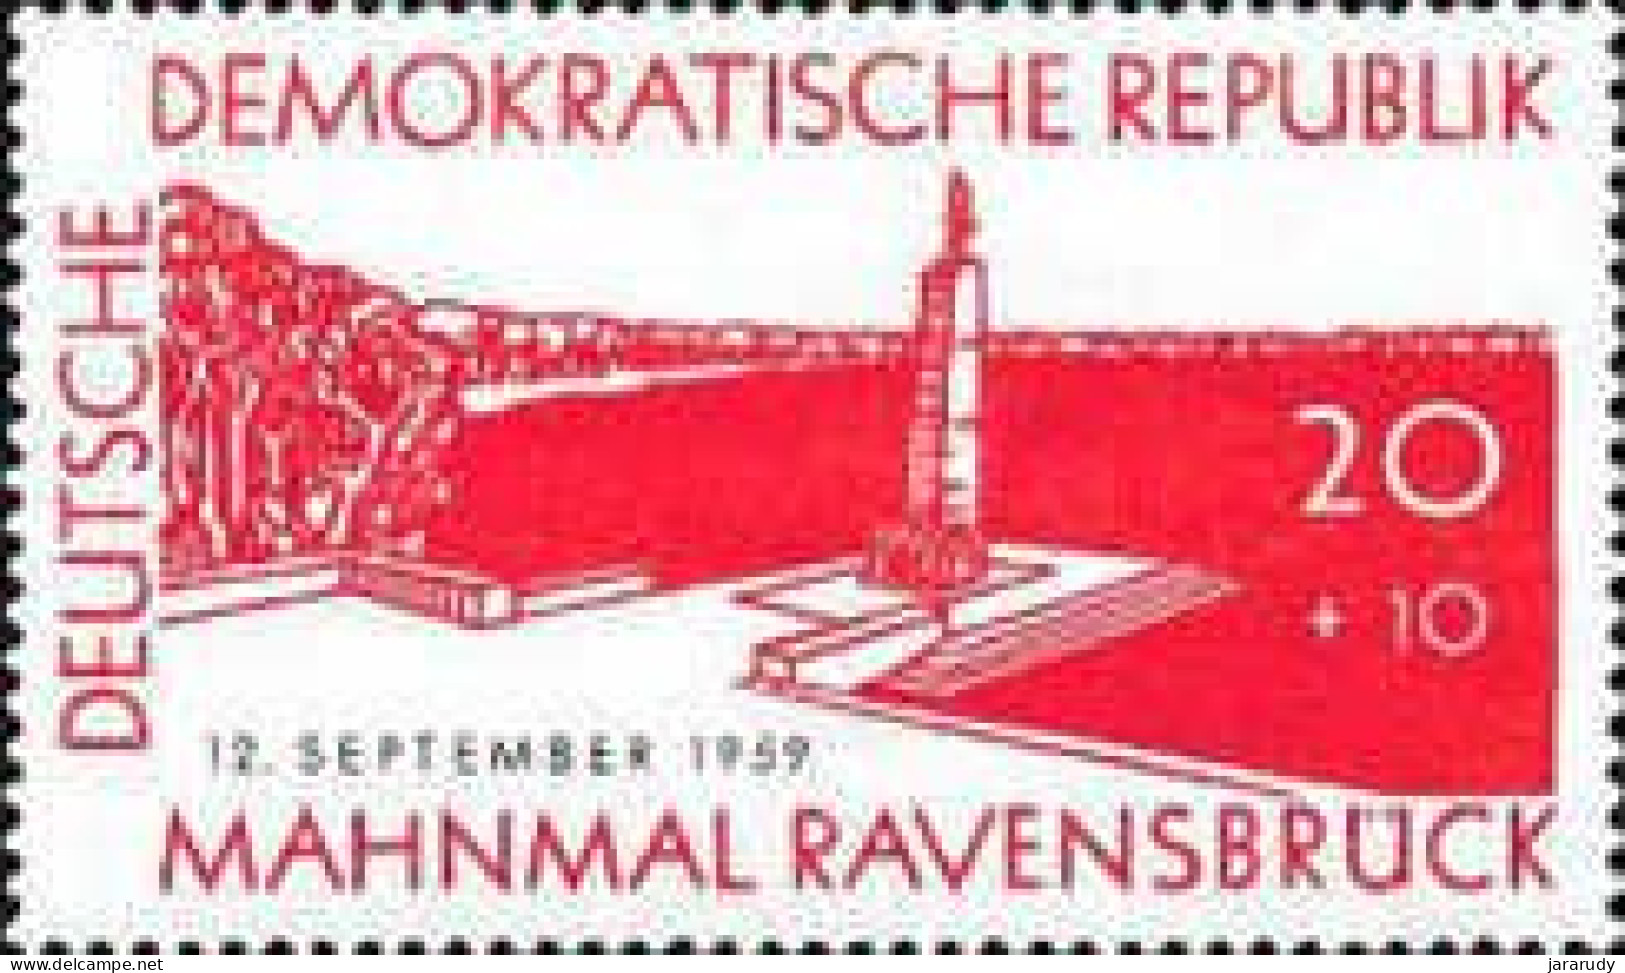 DDR MEMORIA 1959 Yv 435 MNH - Nuovi